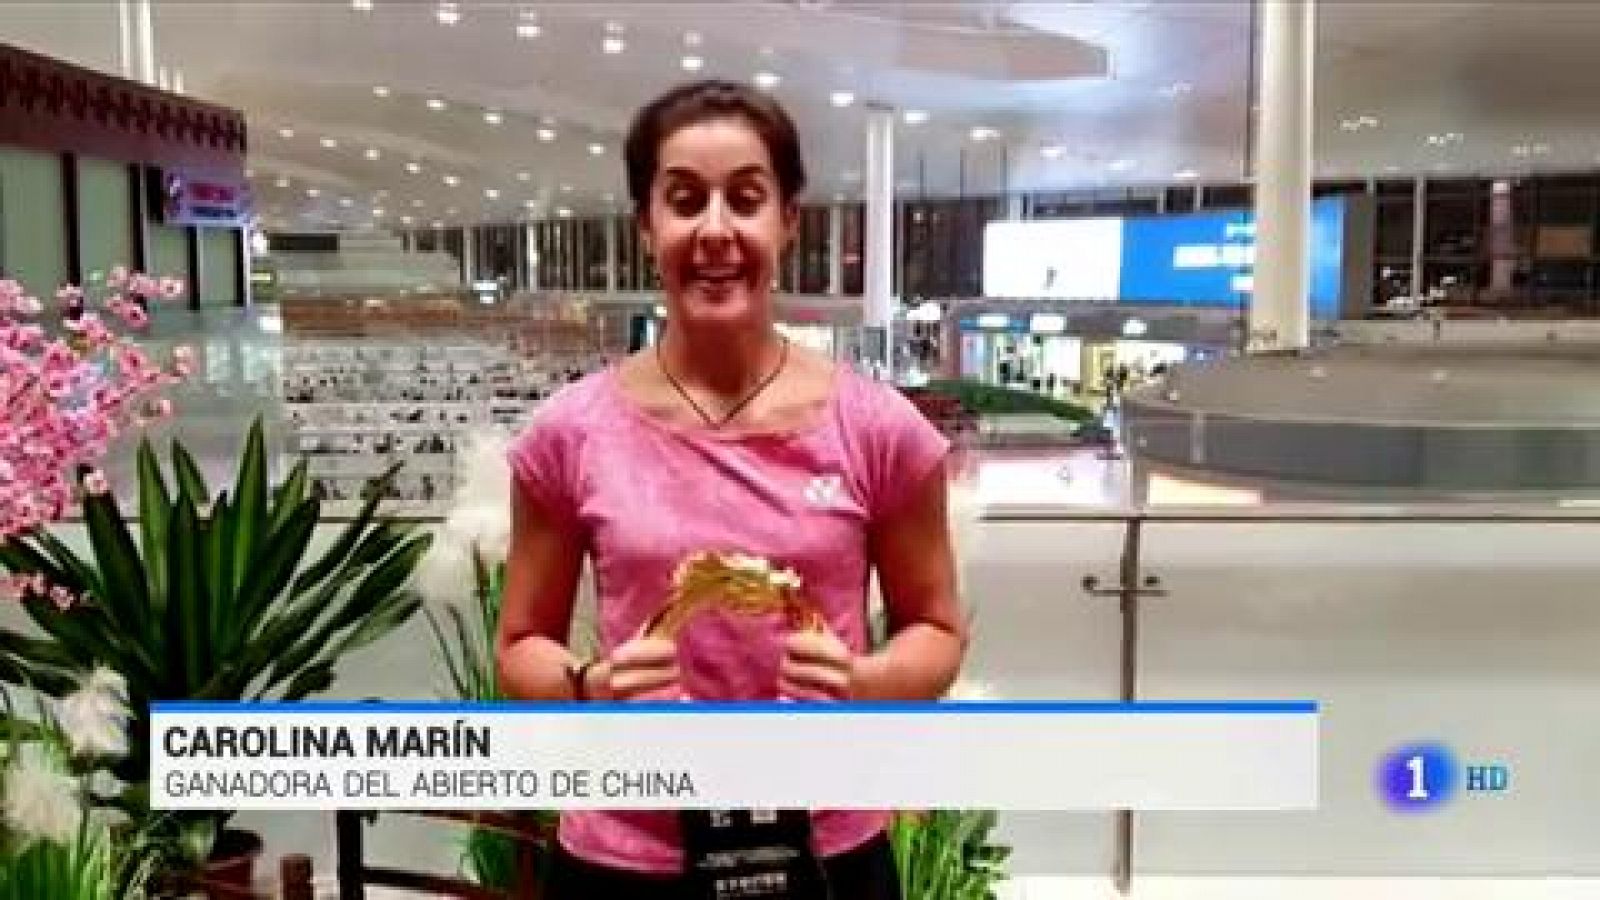 Carolina Marín gana el Abierto de China ocho meses después de su lesión - RTVE.es